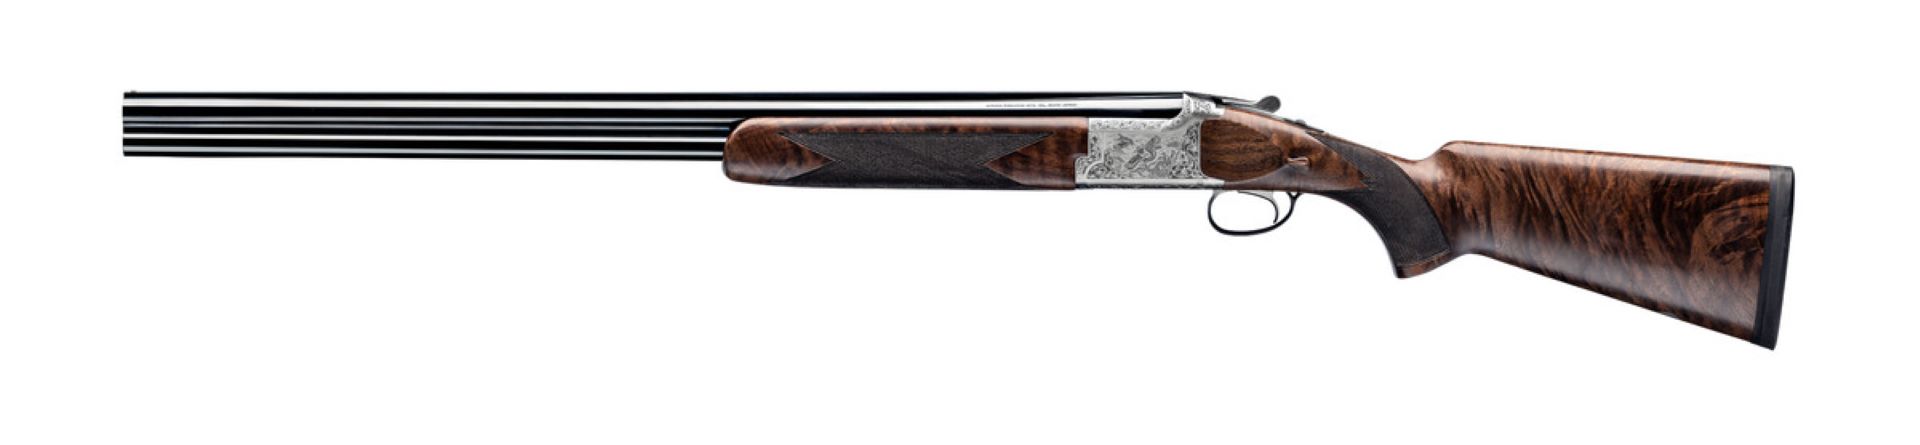 Miroku high pheasant shotgun